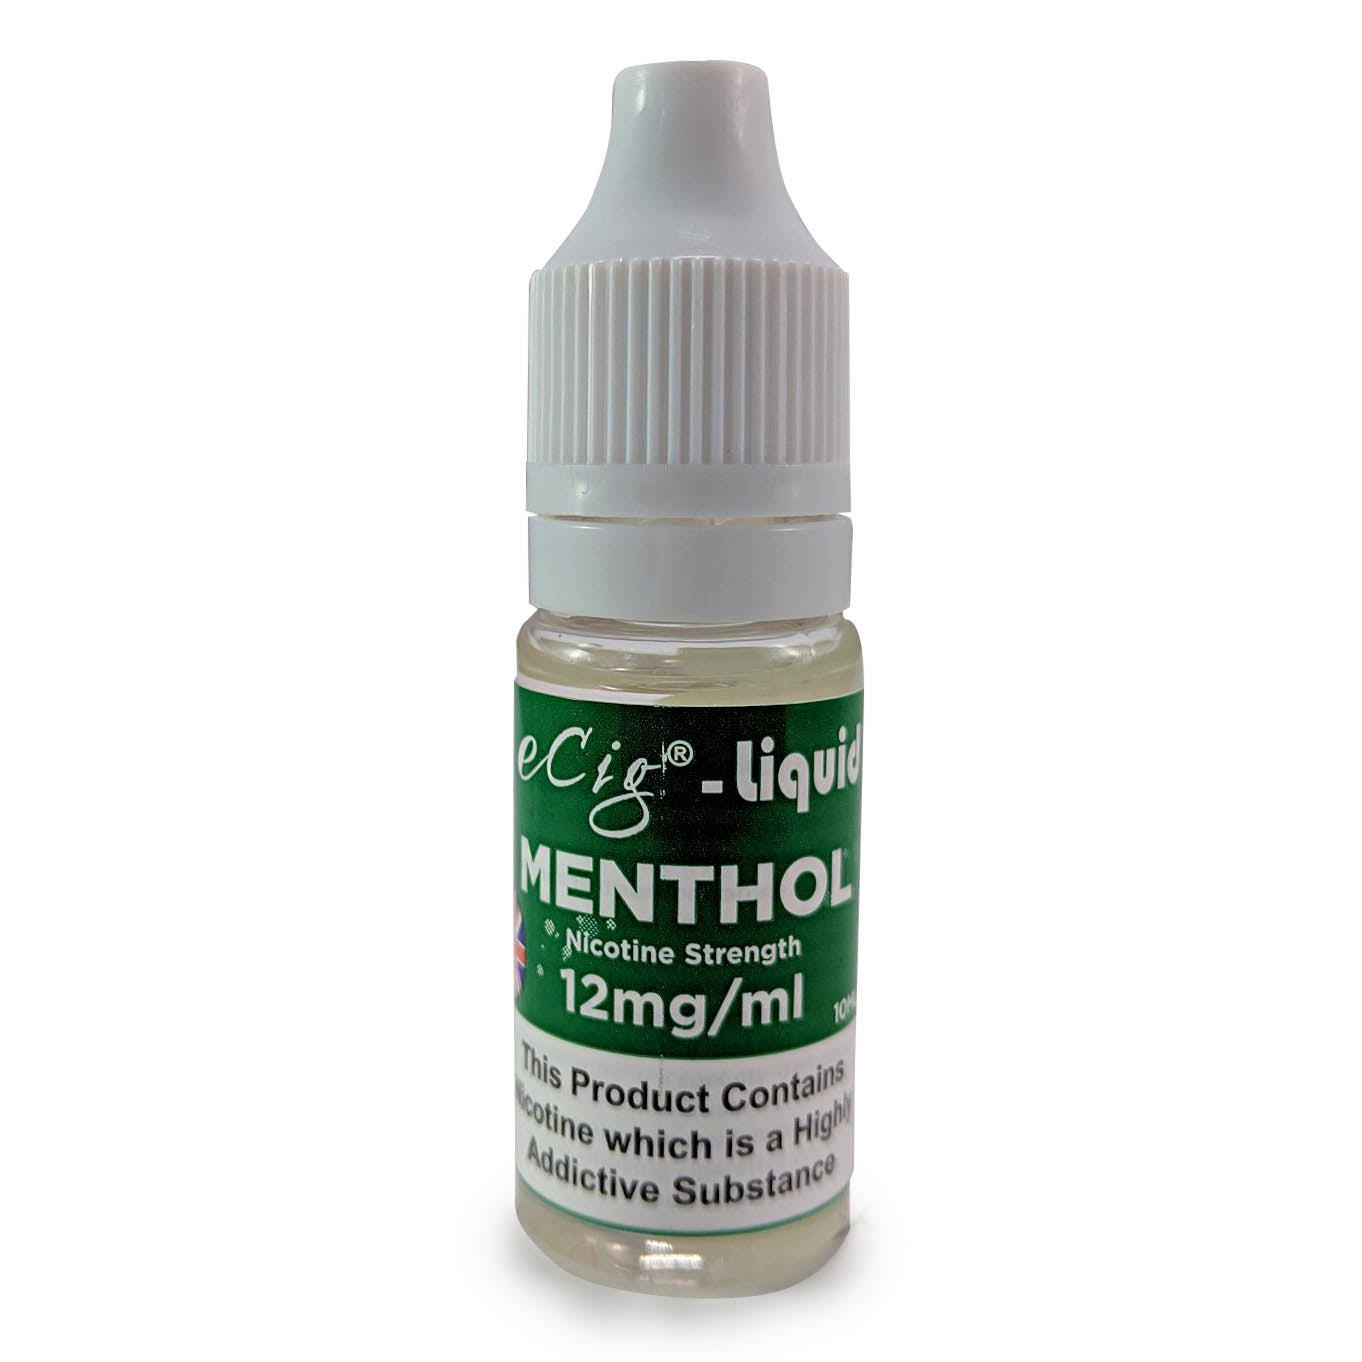 eCig-liquid Menthol 12mg 10 Pack